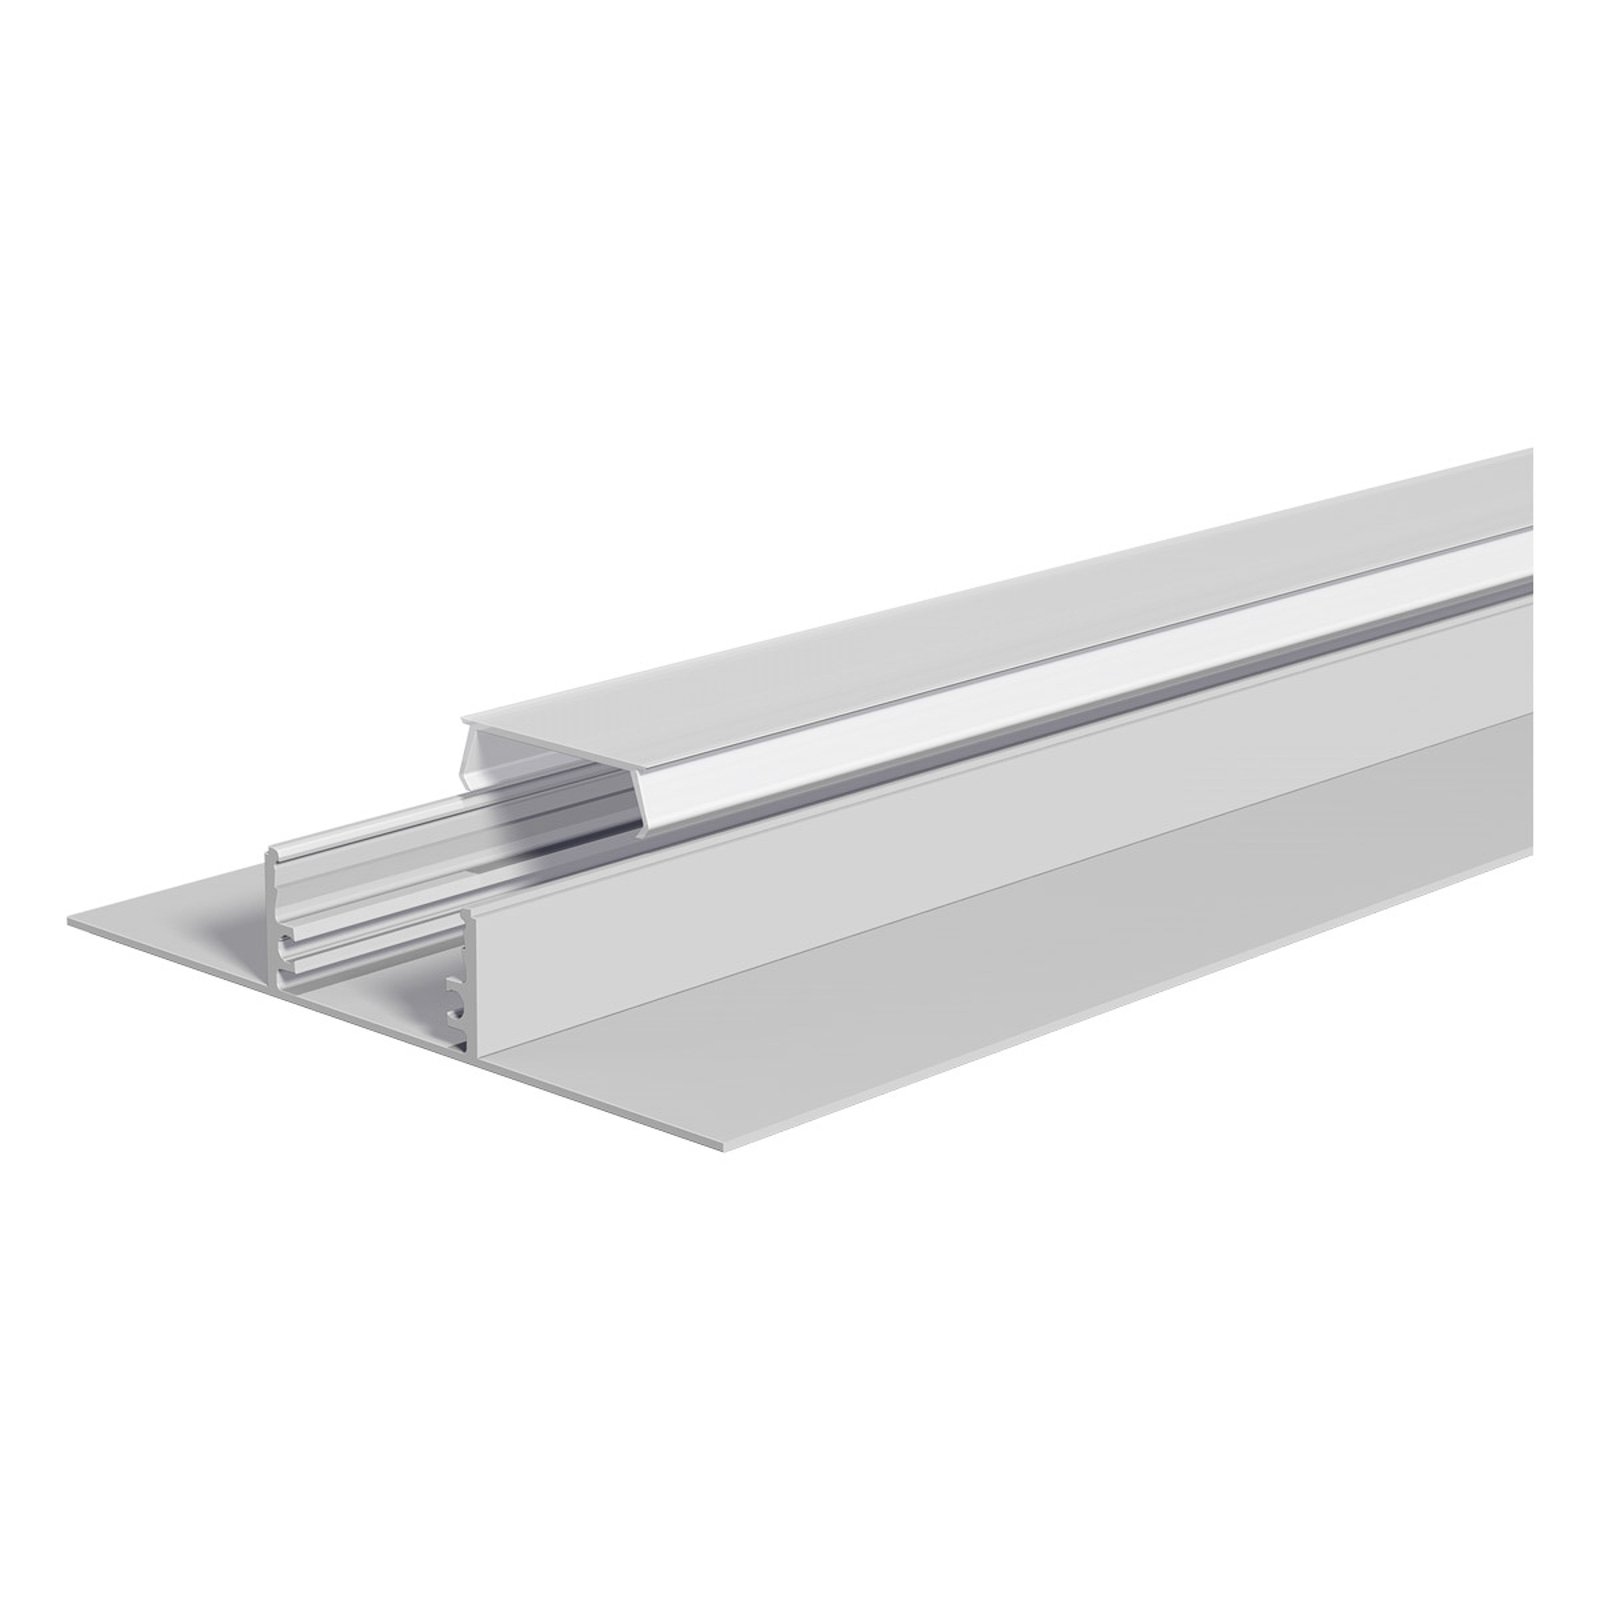 Aluminium drywall profile 200 cm, opal cover